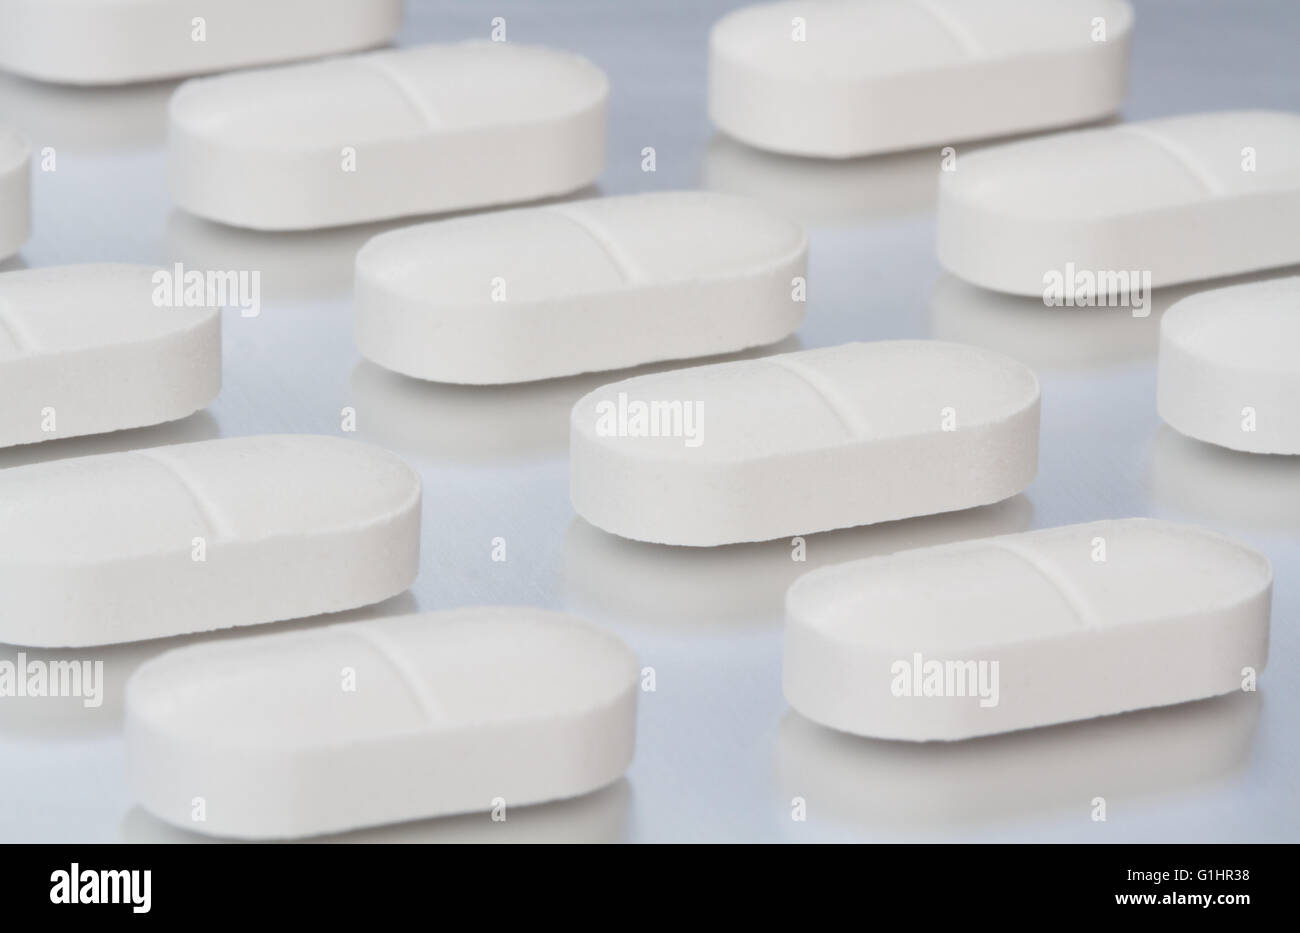 Rangs de perles, le soulagement de la douleur sur une tablette surface de métal brillant dans une image de la fabrication de produits pharmaceutiques. Banque D'Images